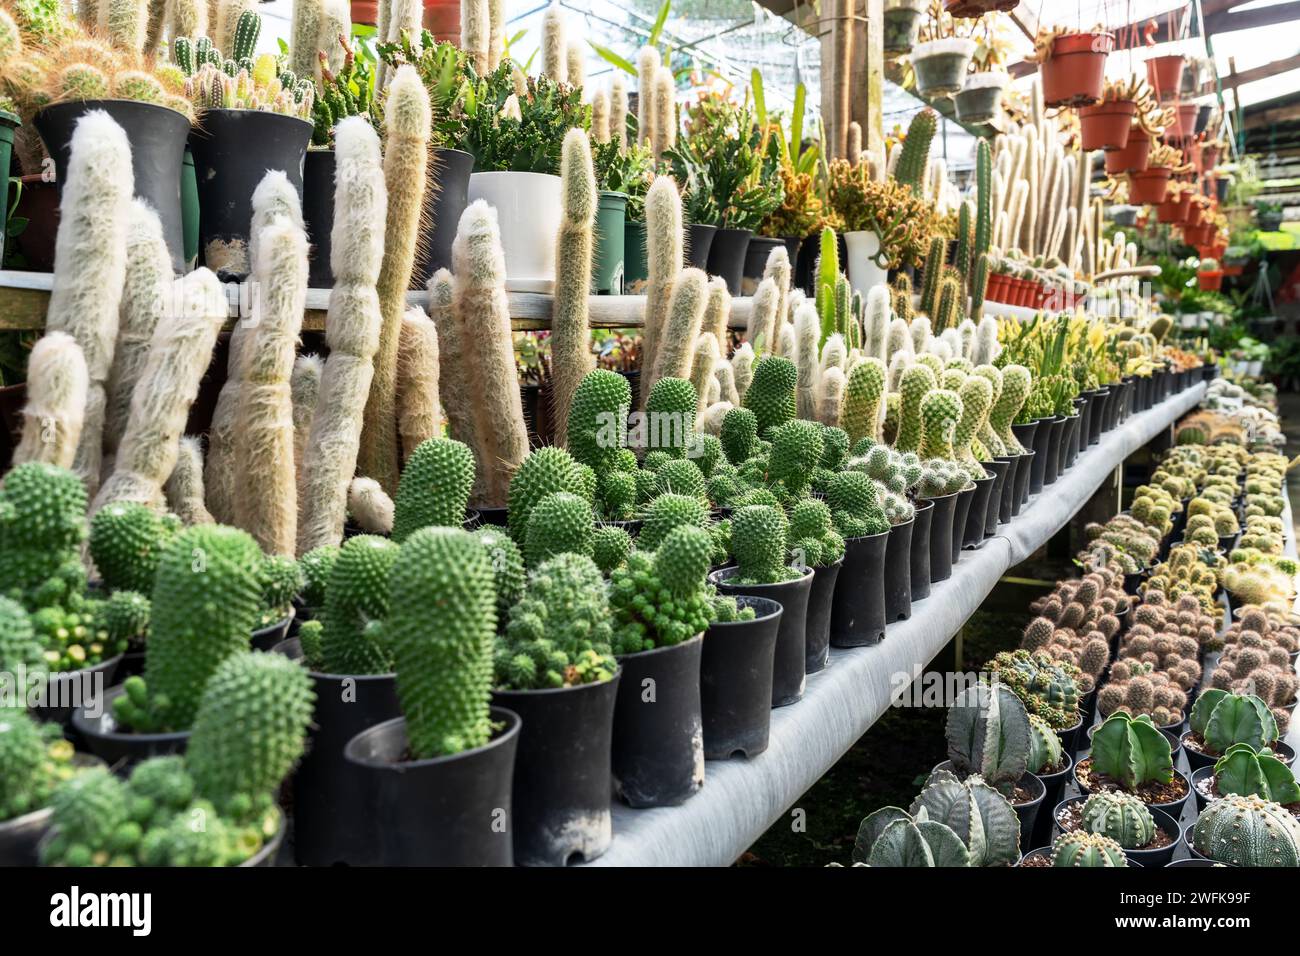 Cactus garden with Espostoa lanata, Mammillaria spinosissima cv. 'Un Pico' and other cactus Stock Photo